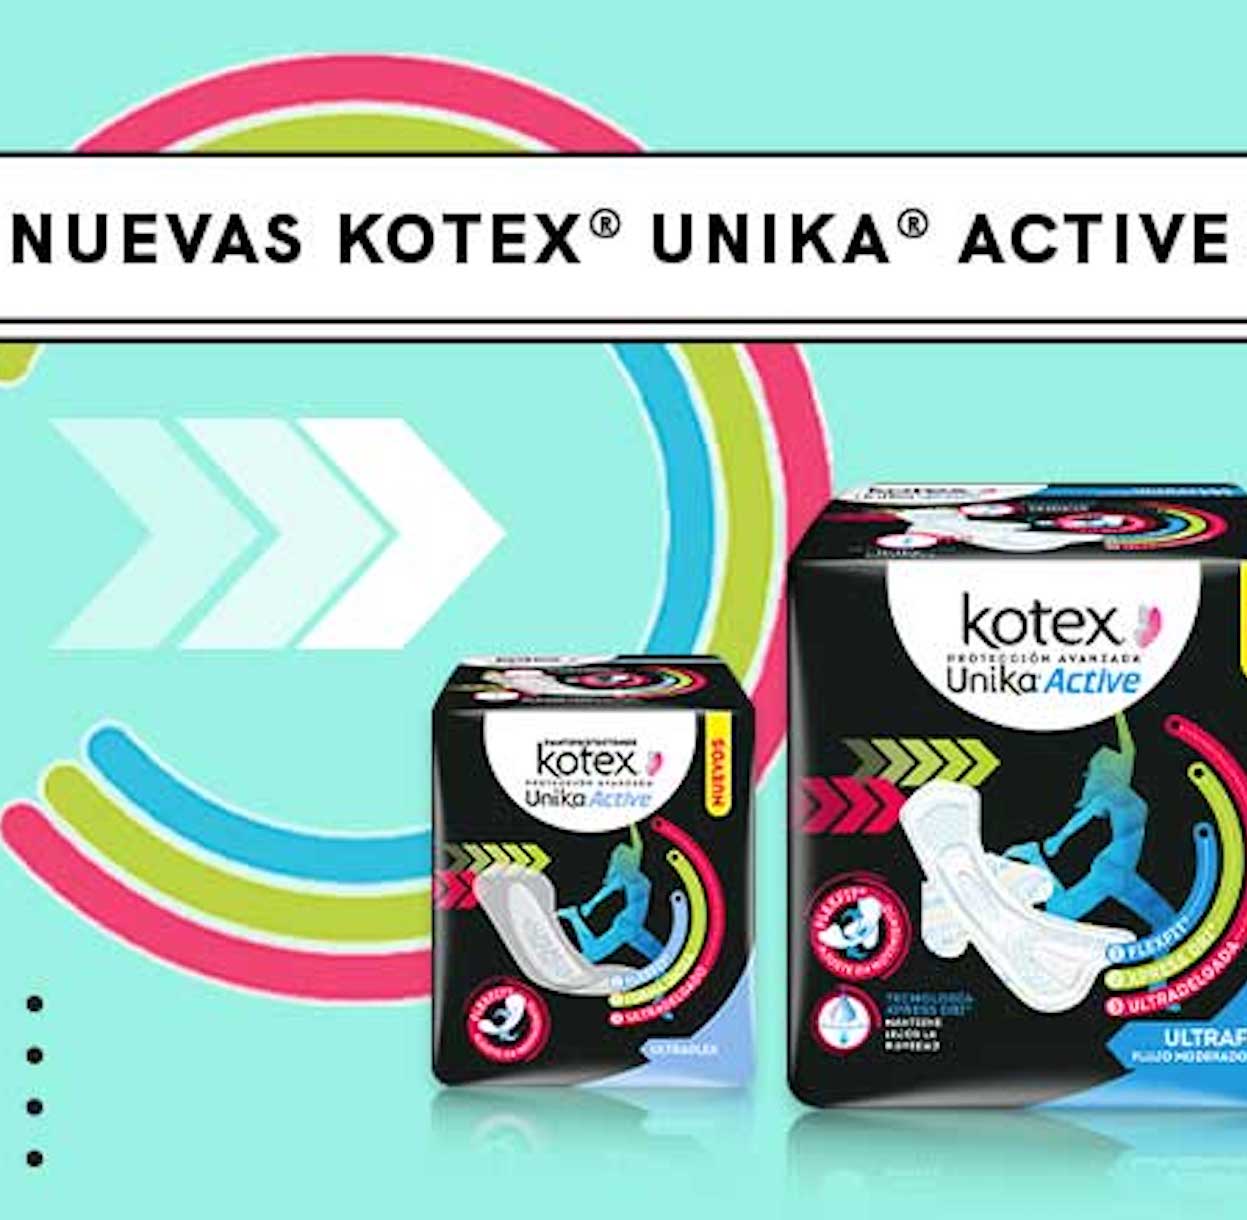 Kotex® Unika® Active, producto con causa ¡Ayuda a miles de mujeres a mejorar sus condiciones!